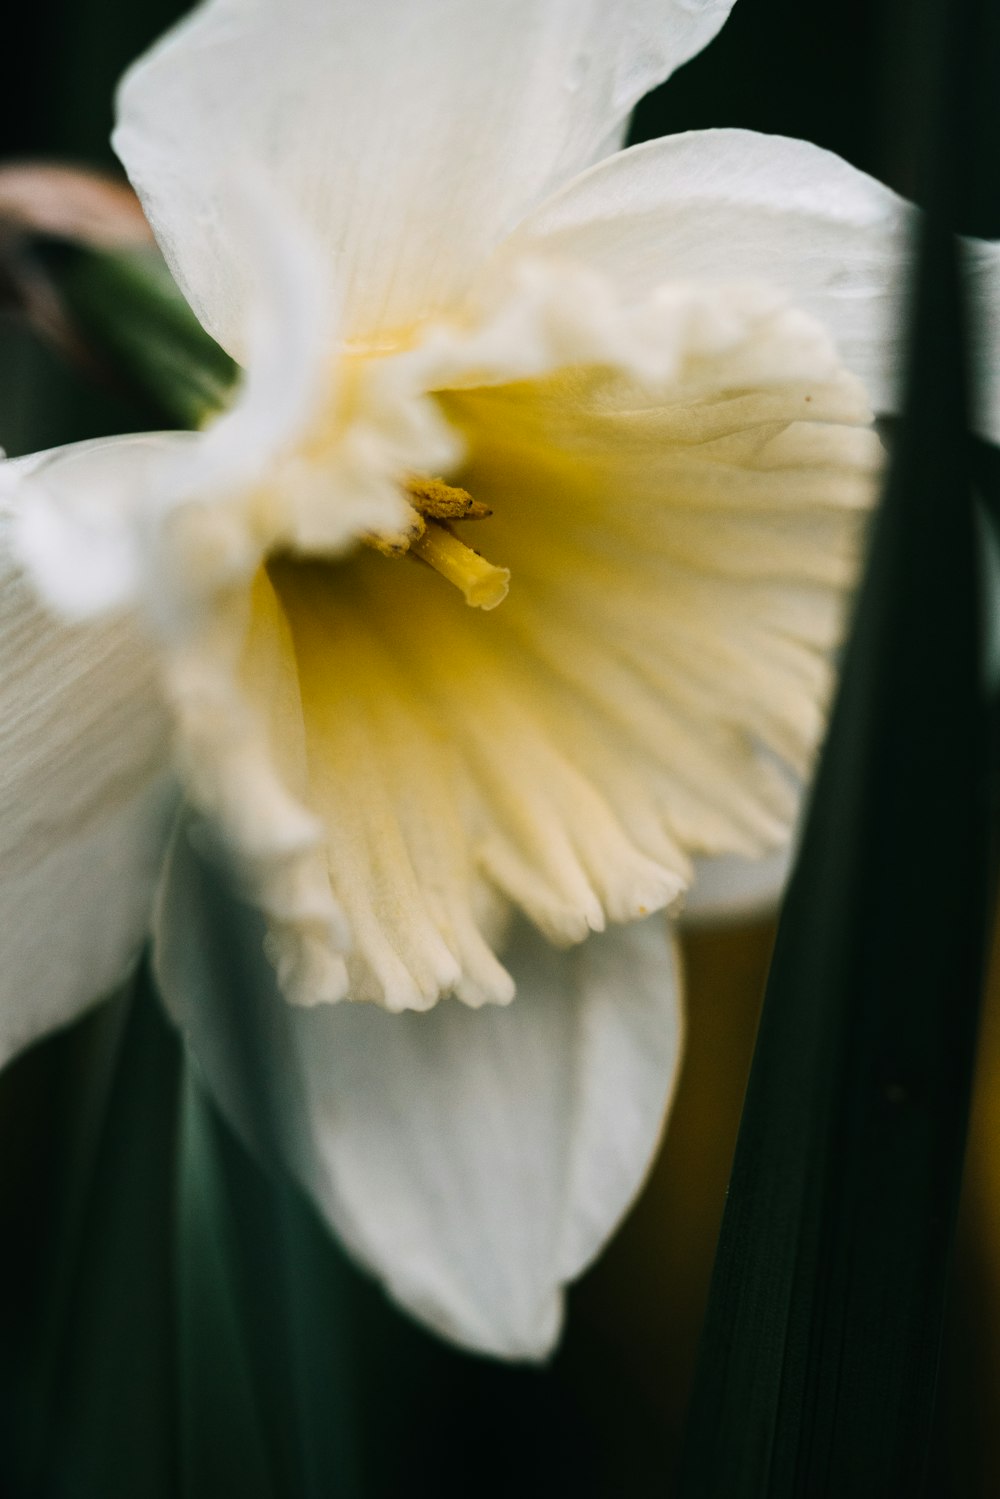 Gros plan d’une fleur blanche avec un centre jaune